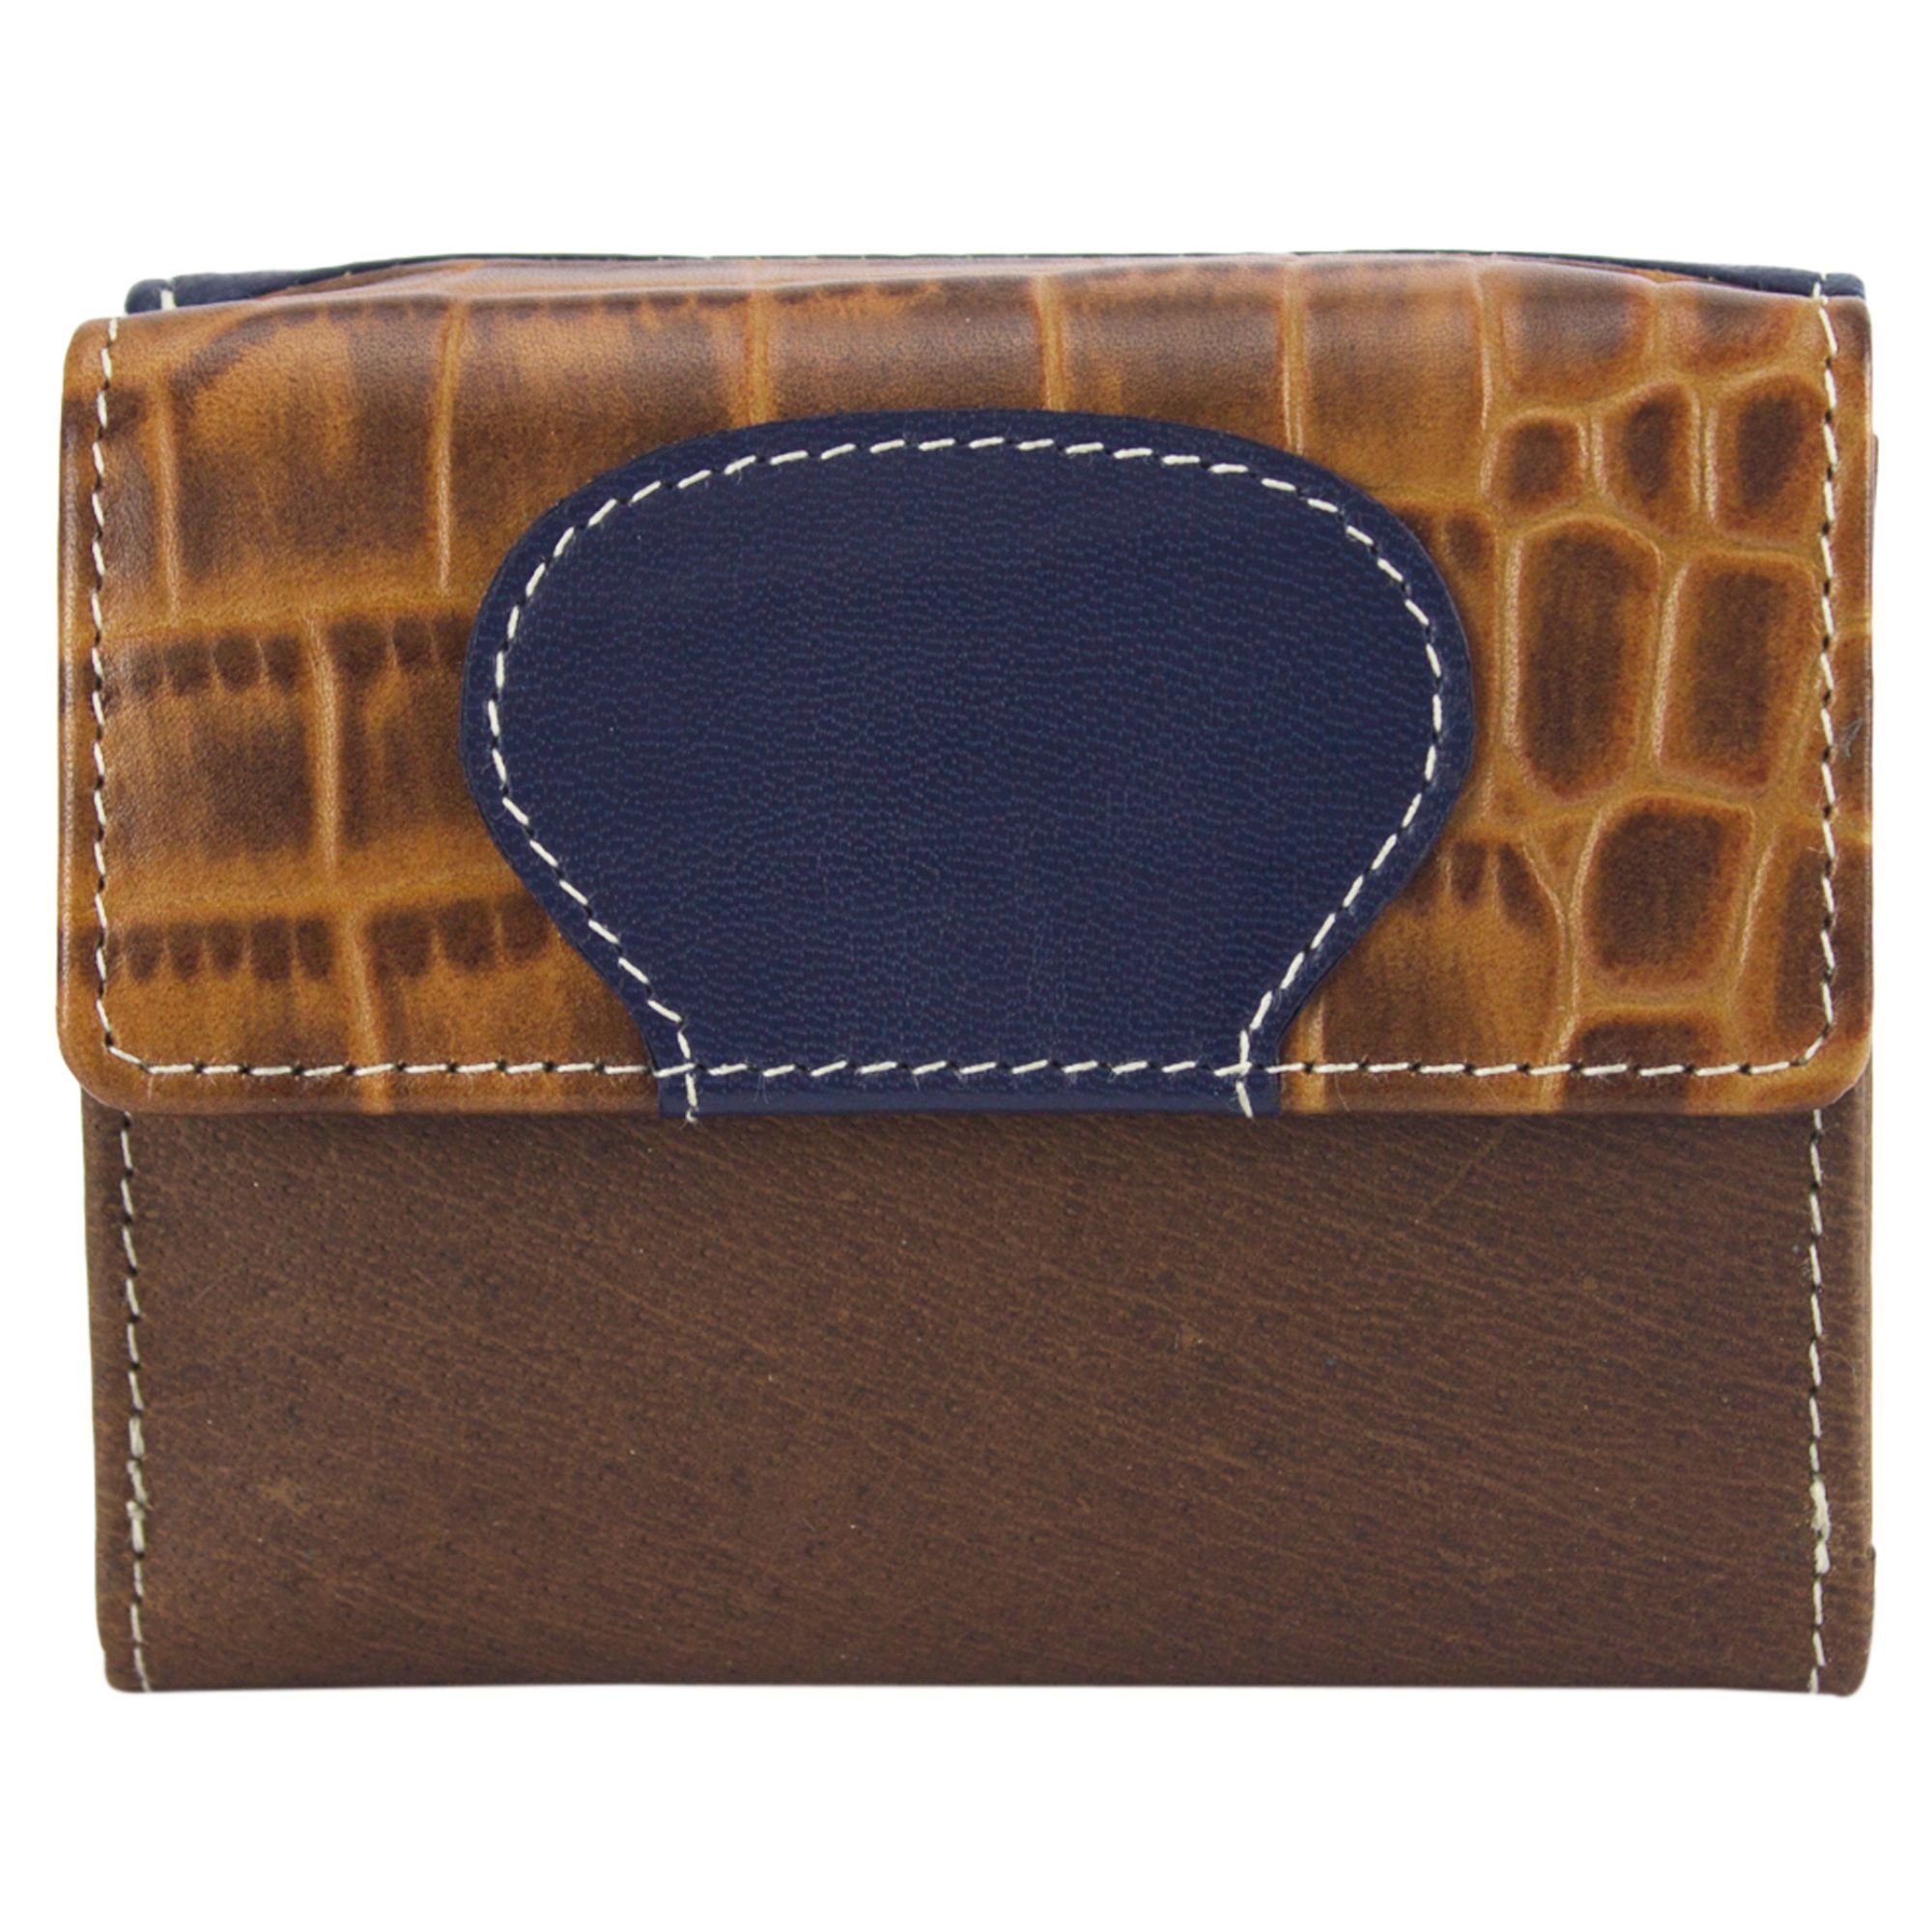 Sunsa Mini Geldbörse echt Leder Geldbörse Damen Geldbeutel Portemonnaie kleine Brieftasche, echt Leder, aus recycelten Lederresten, mit RFID-Schutz, Unisex schwarz/geldb/grün